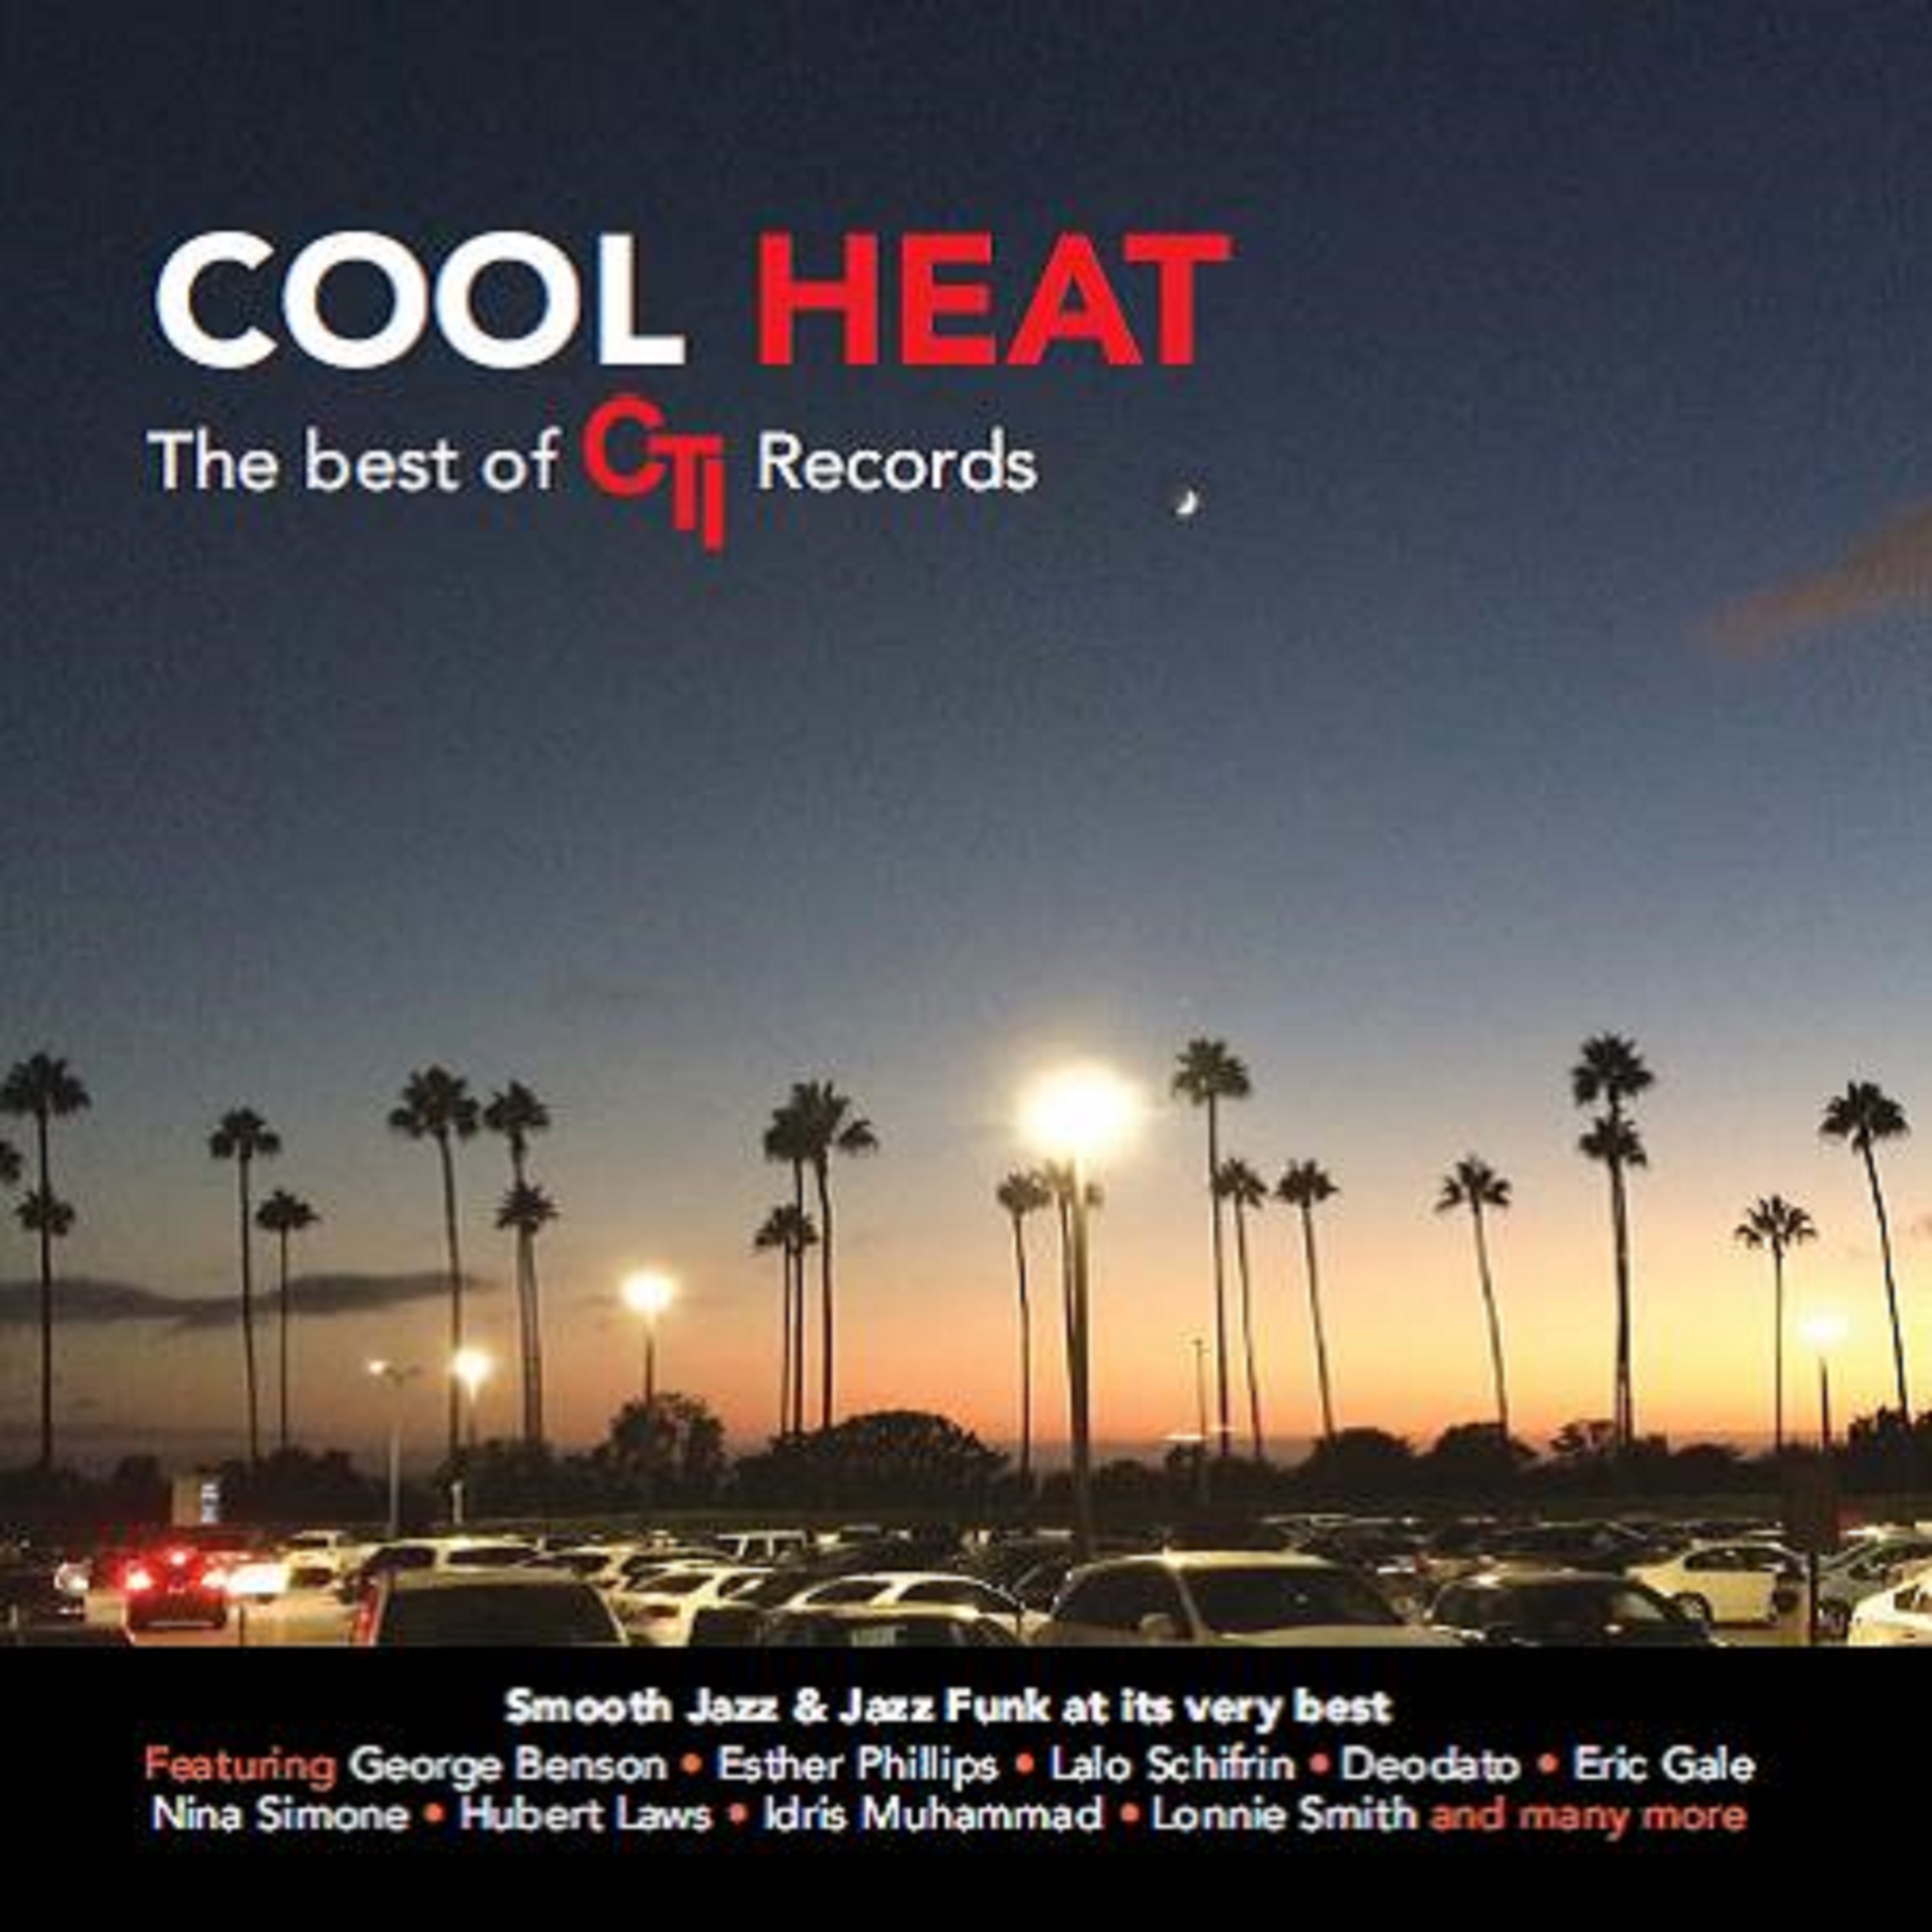 COOL-HEAT-CTI-RECORDS